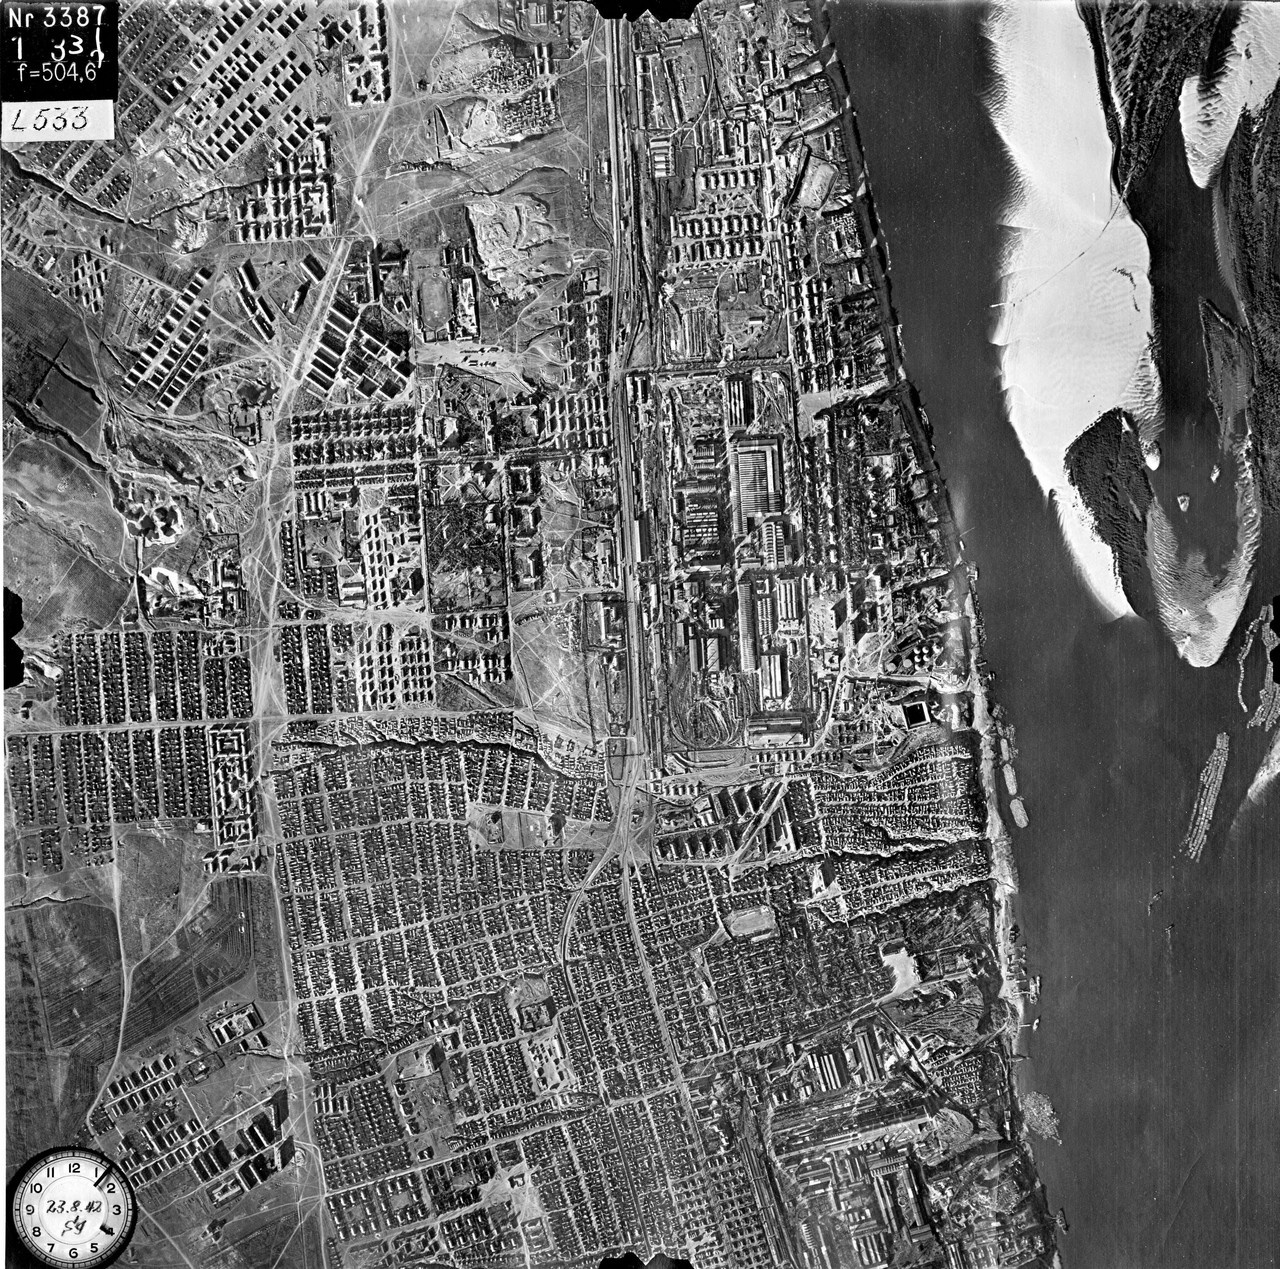 Сталинград, 23 августа 1942 год. Снимок сделан немецким самолётом-разведчиком перед бомбёжкой.